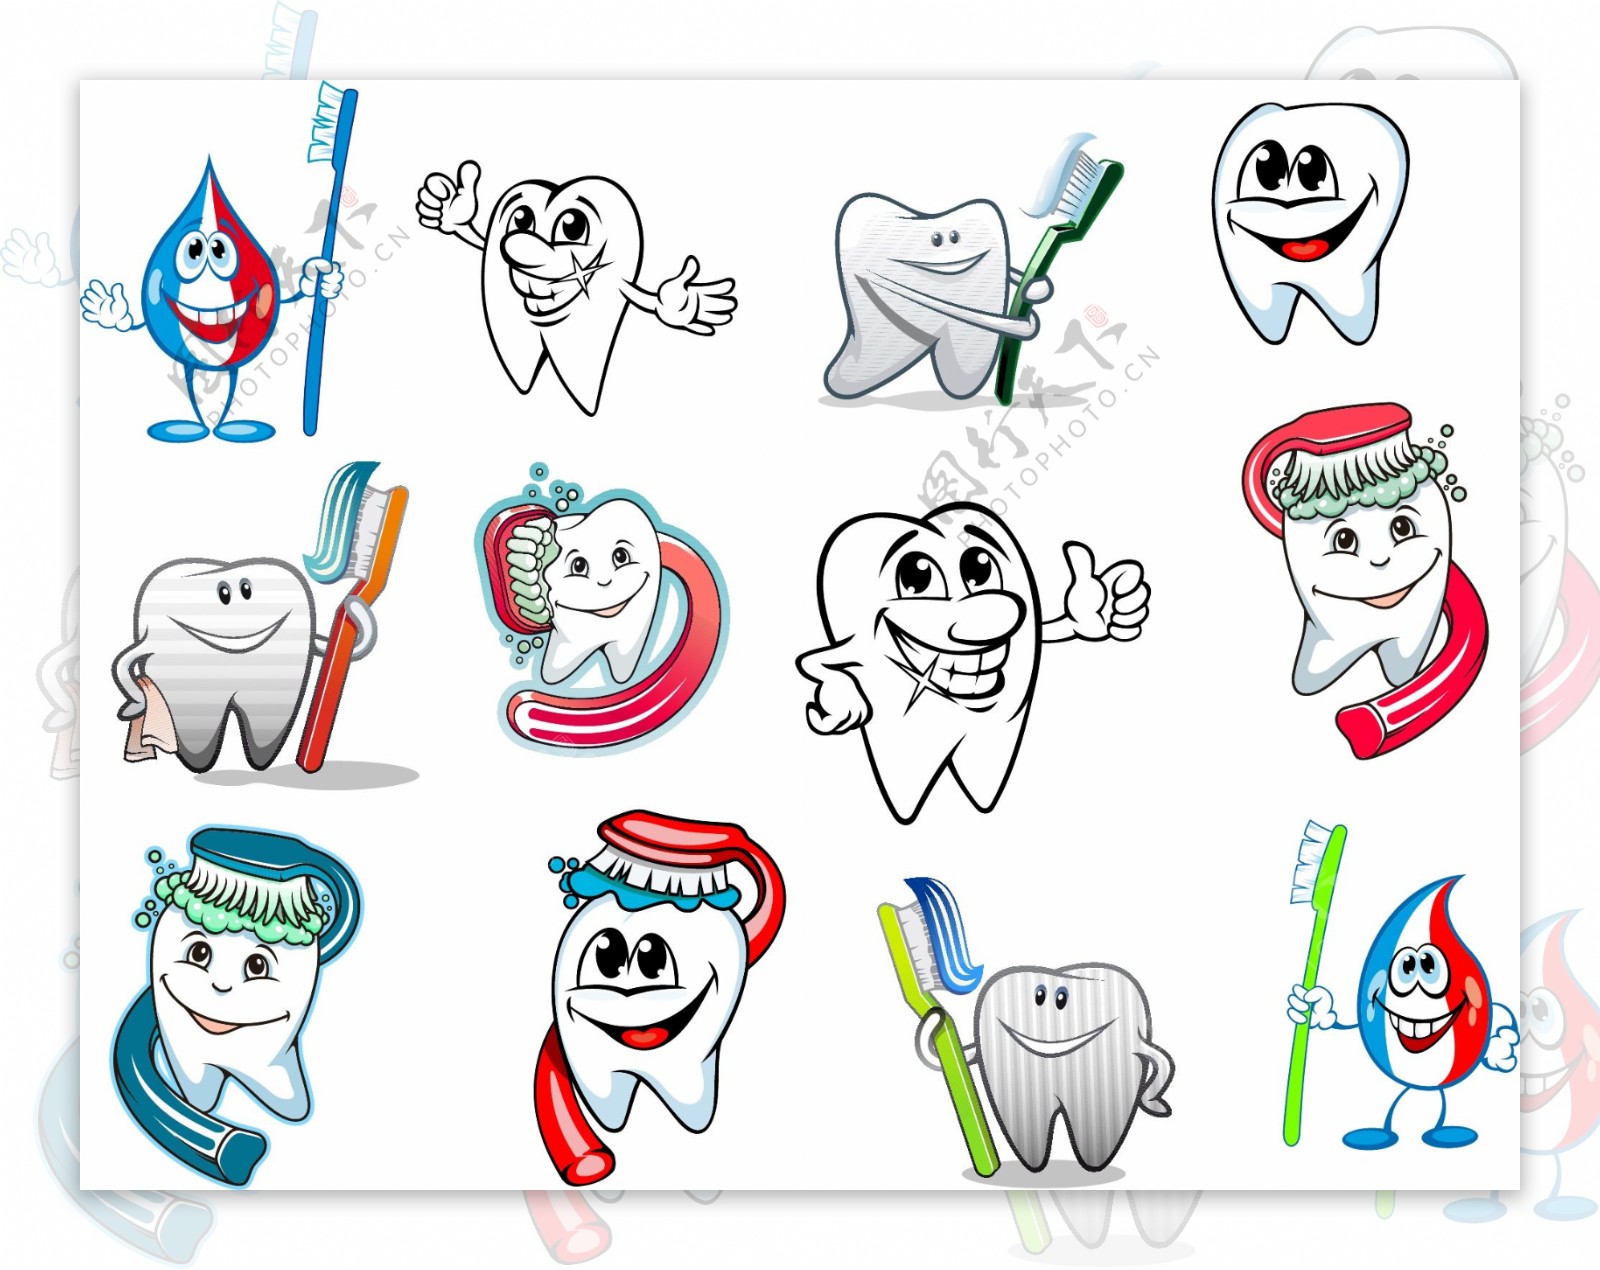 卡通牙医诊所及保护牙齿系列矢量素材